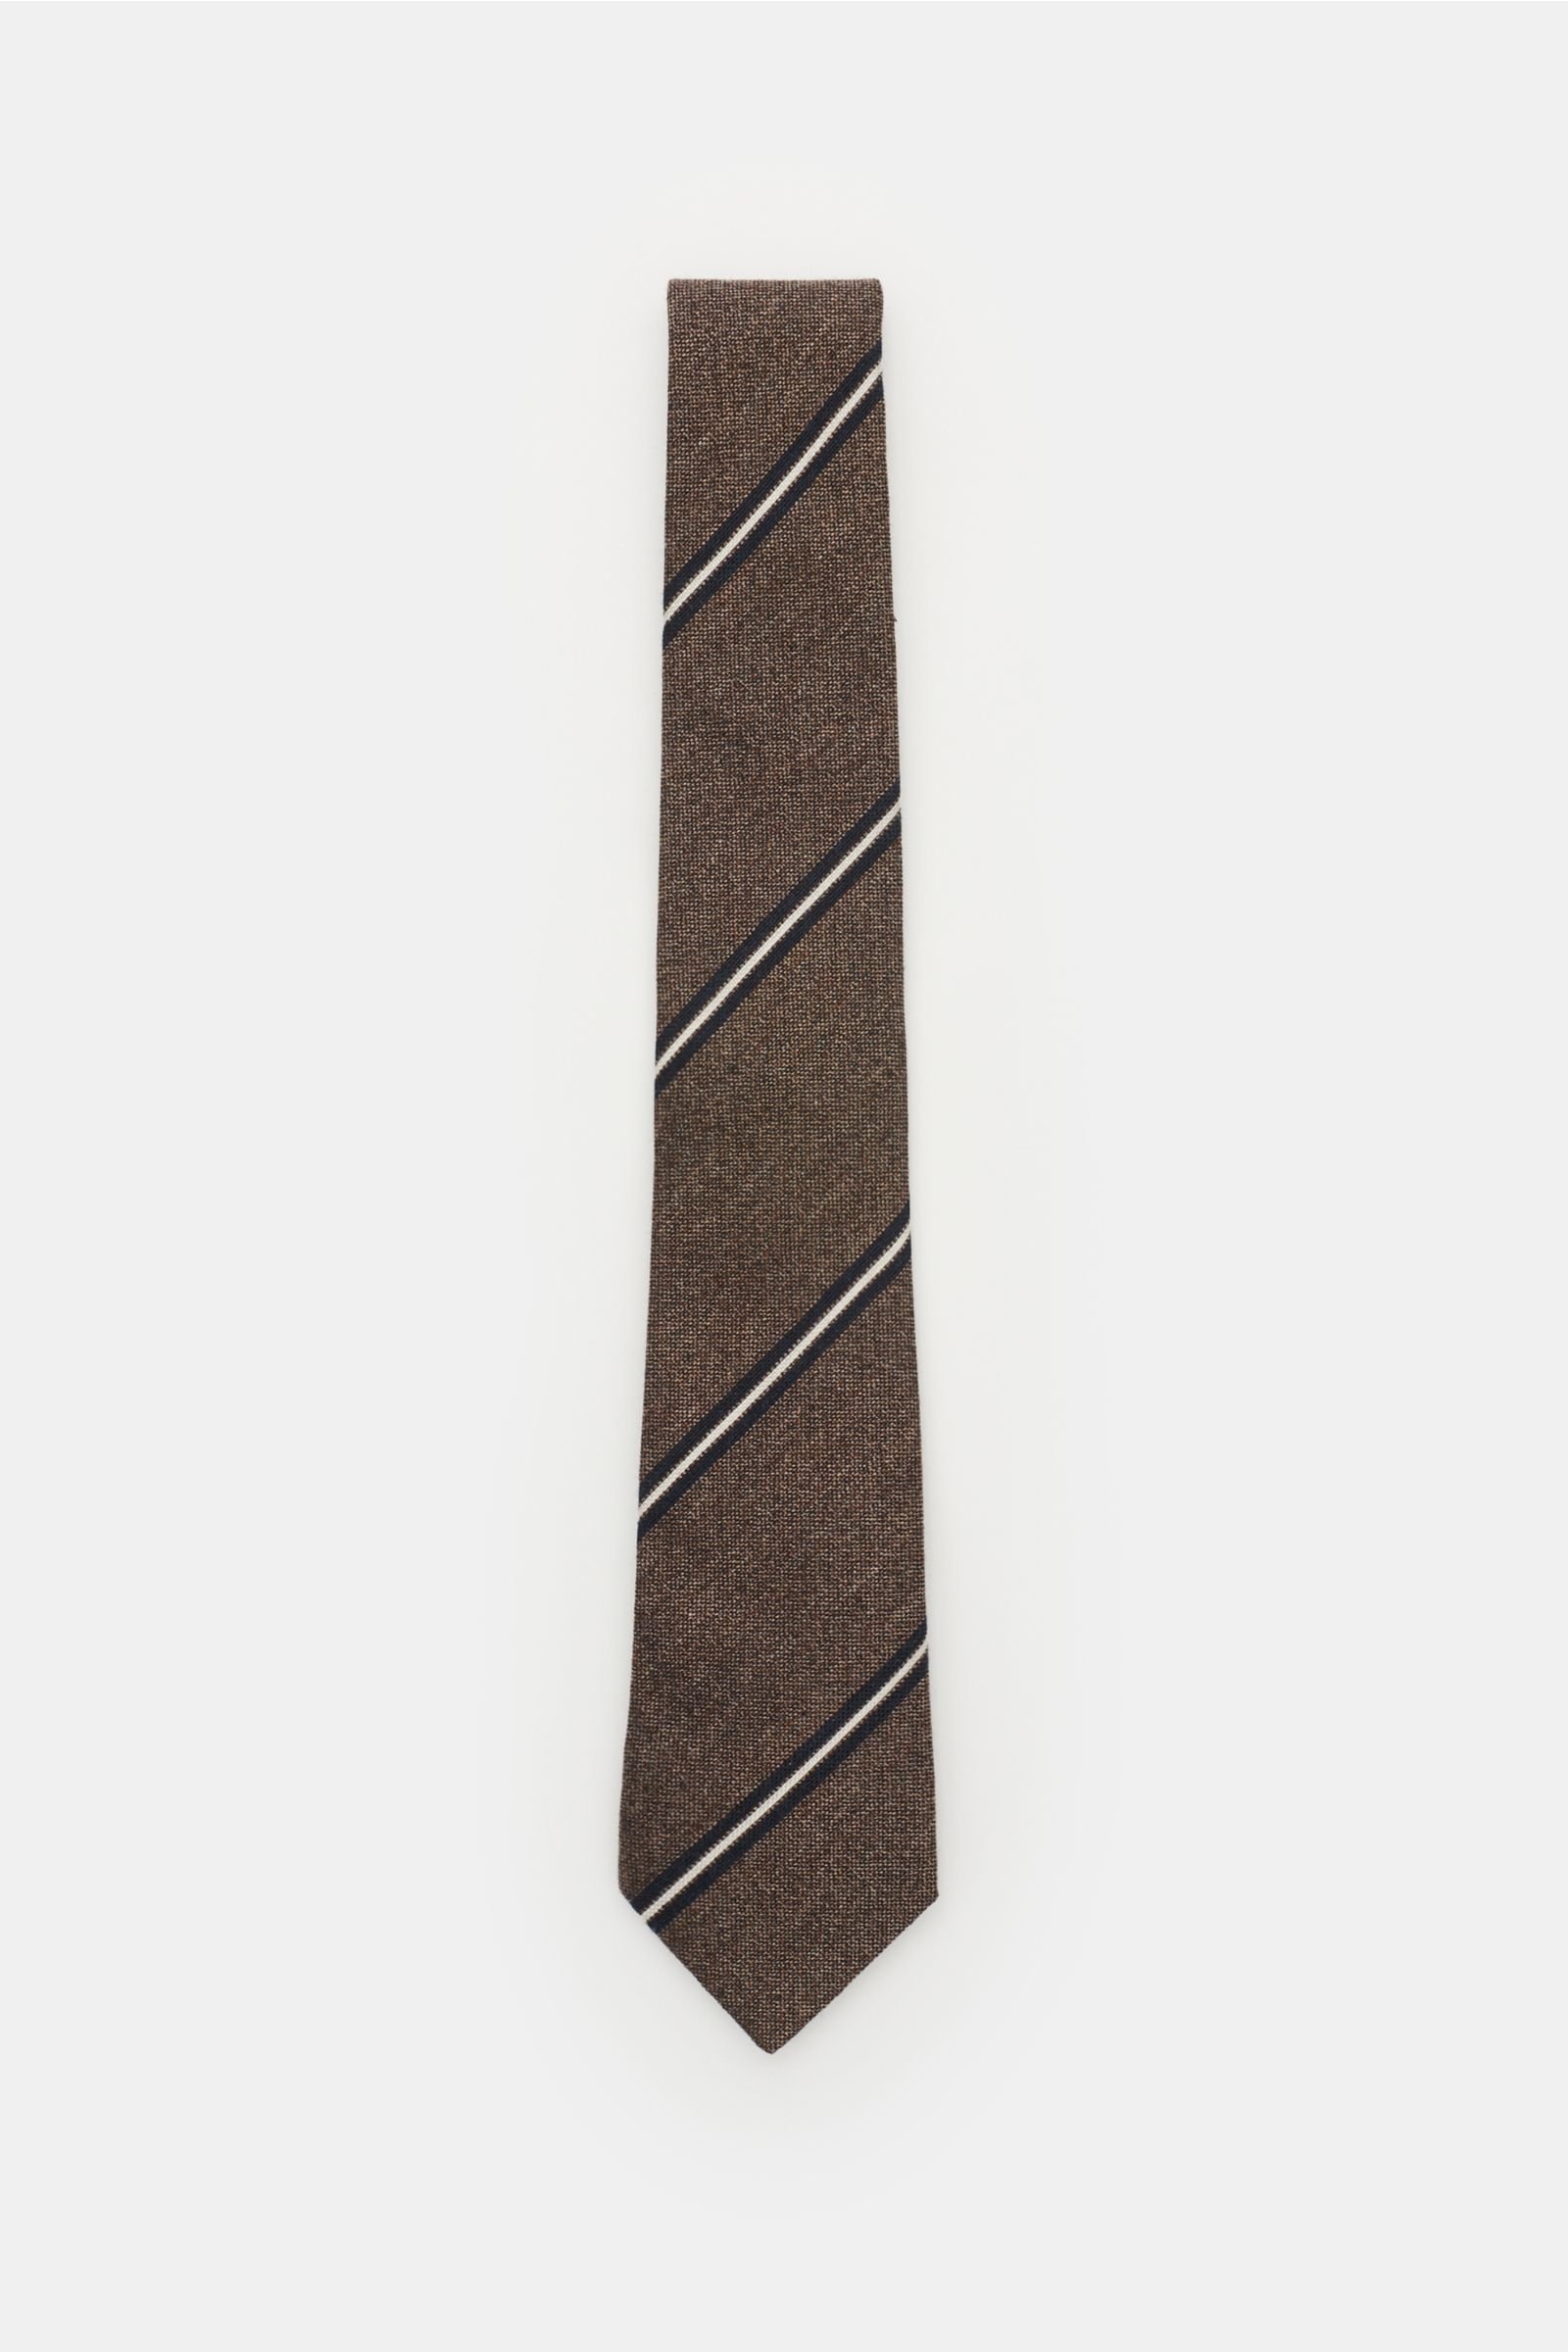 Tie dark brown striped